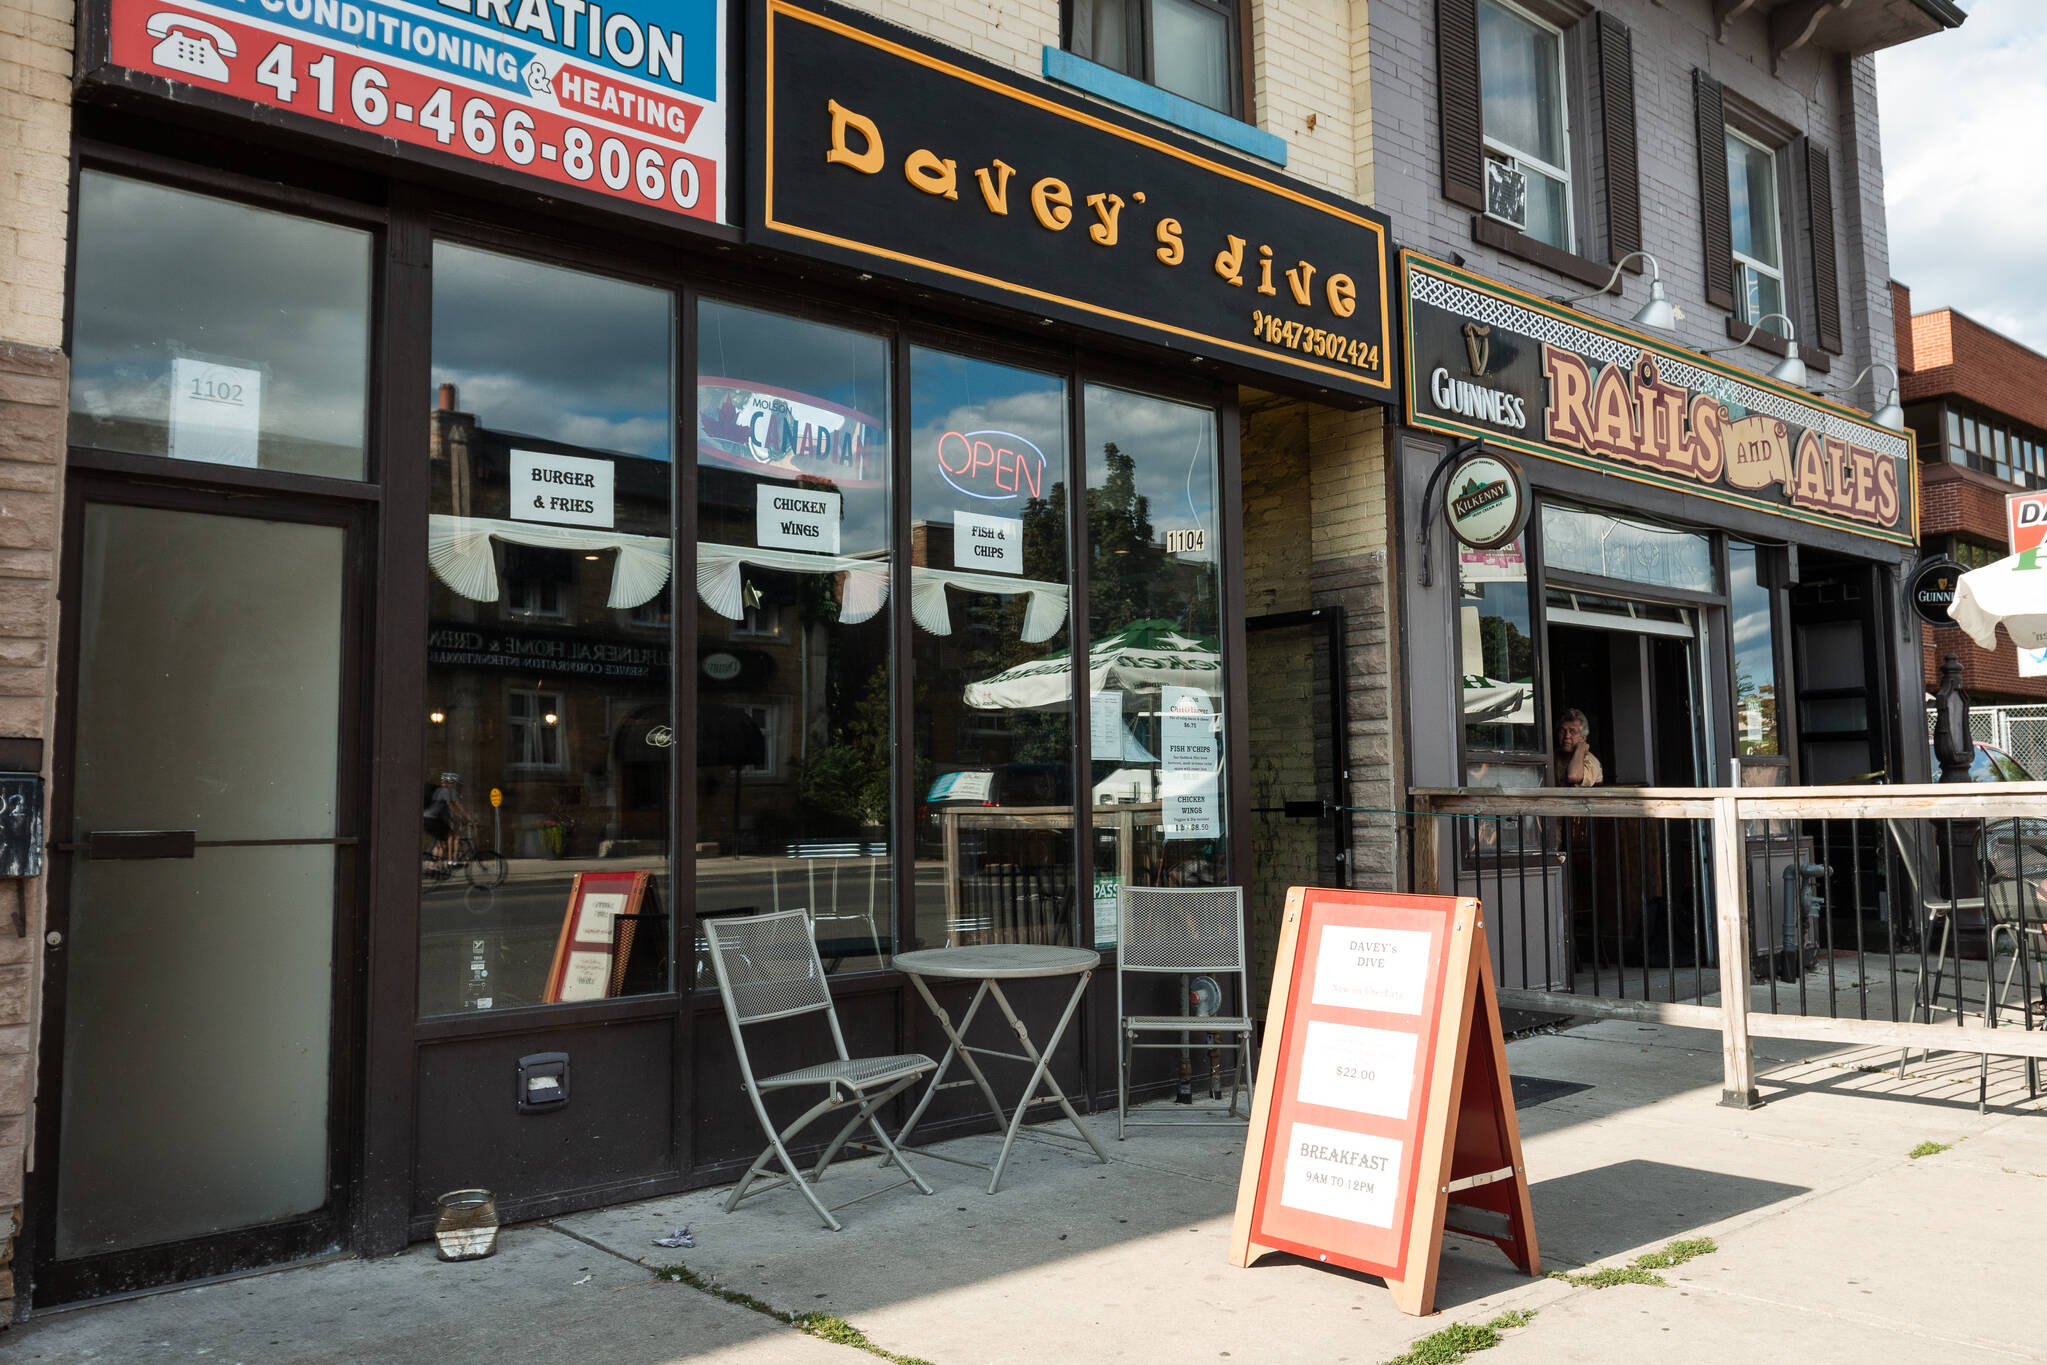 Daveys Dive Toronto